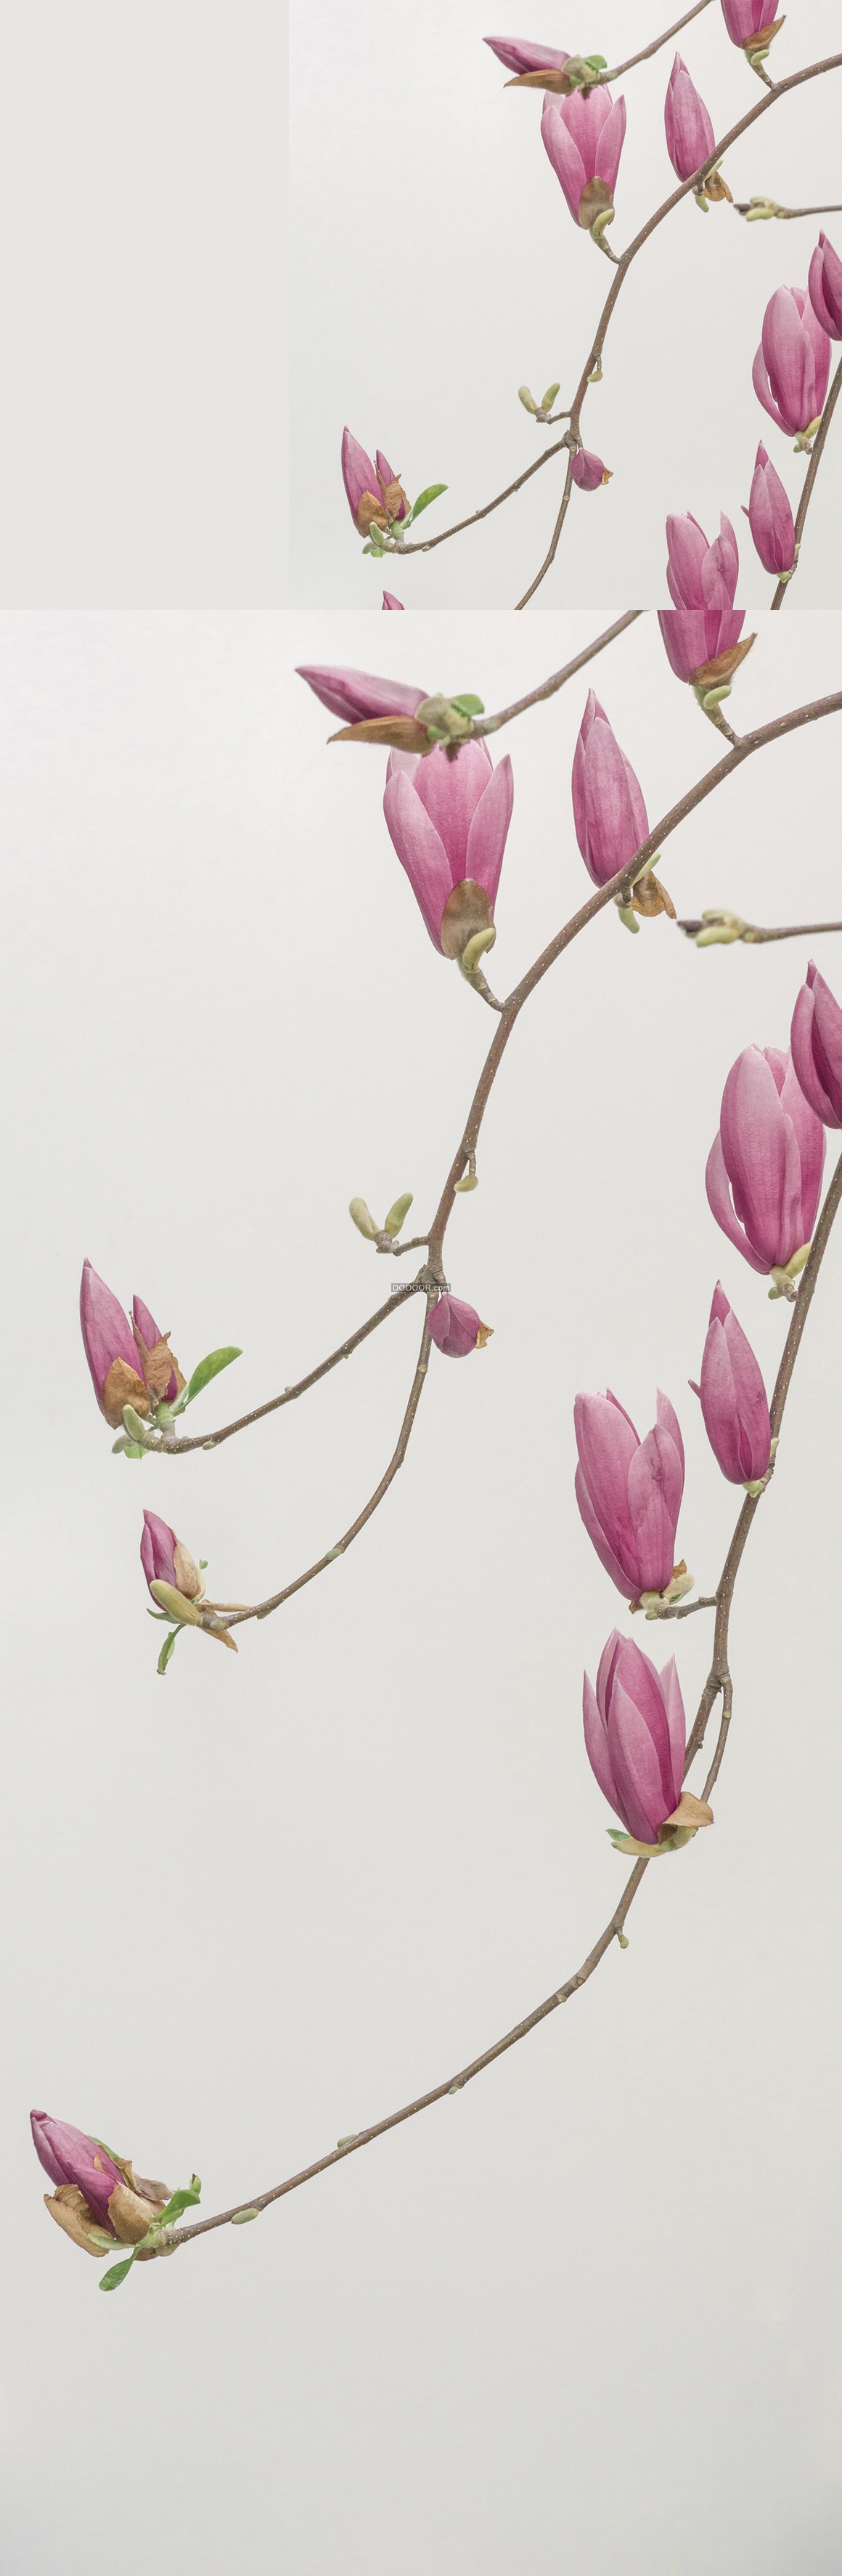 中国风水彩画枝头绽放的粉色桃花植物素材设计 超清单图 手机版 Powered By Discuz